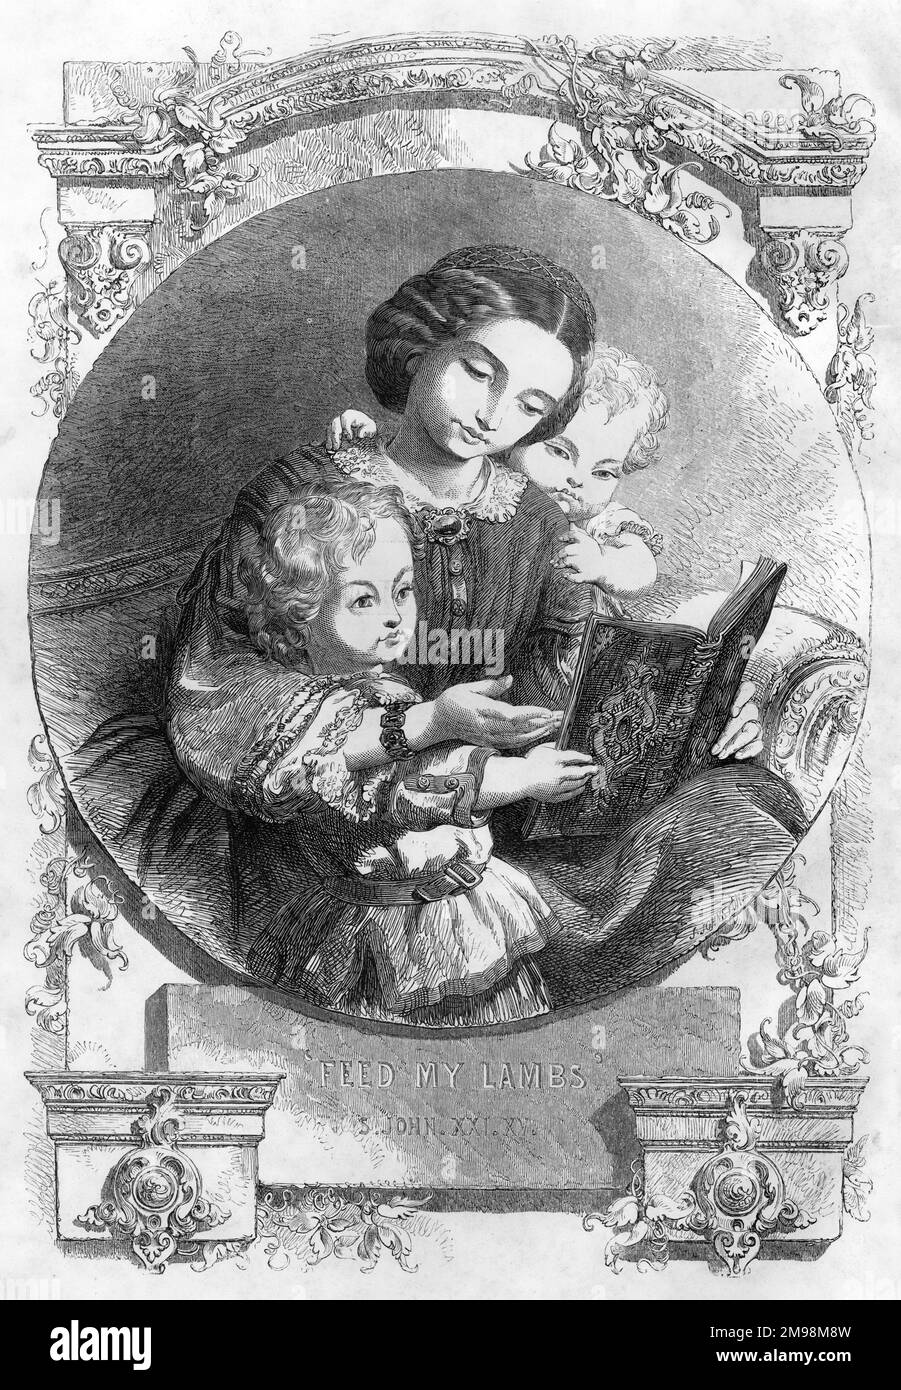 Frontispiece, das Mutterbild-Alphabet – Füttern Sie meine Lämmer, St. John XXI XV (Kapitel 21, Vers 15). Eine junge Mutter liest ihren beiden Kindern ein Buch vor. Stockfoto